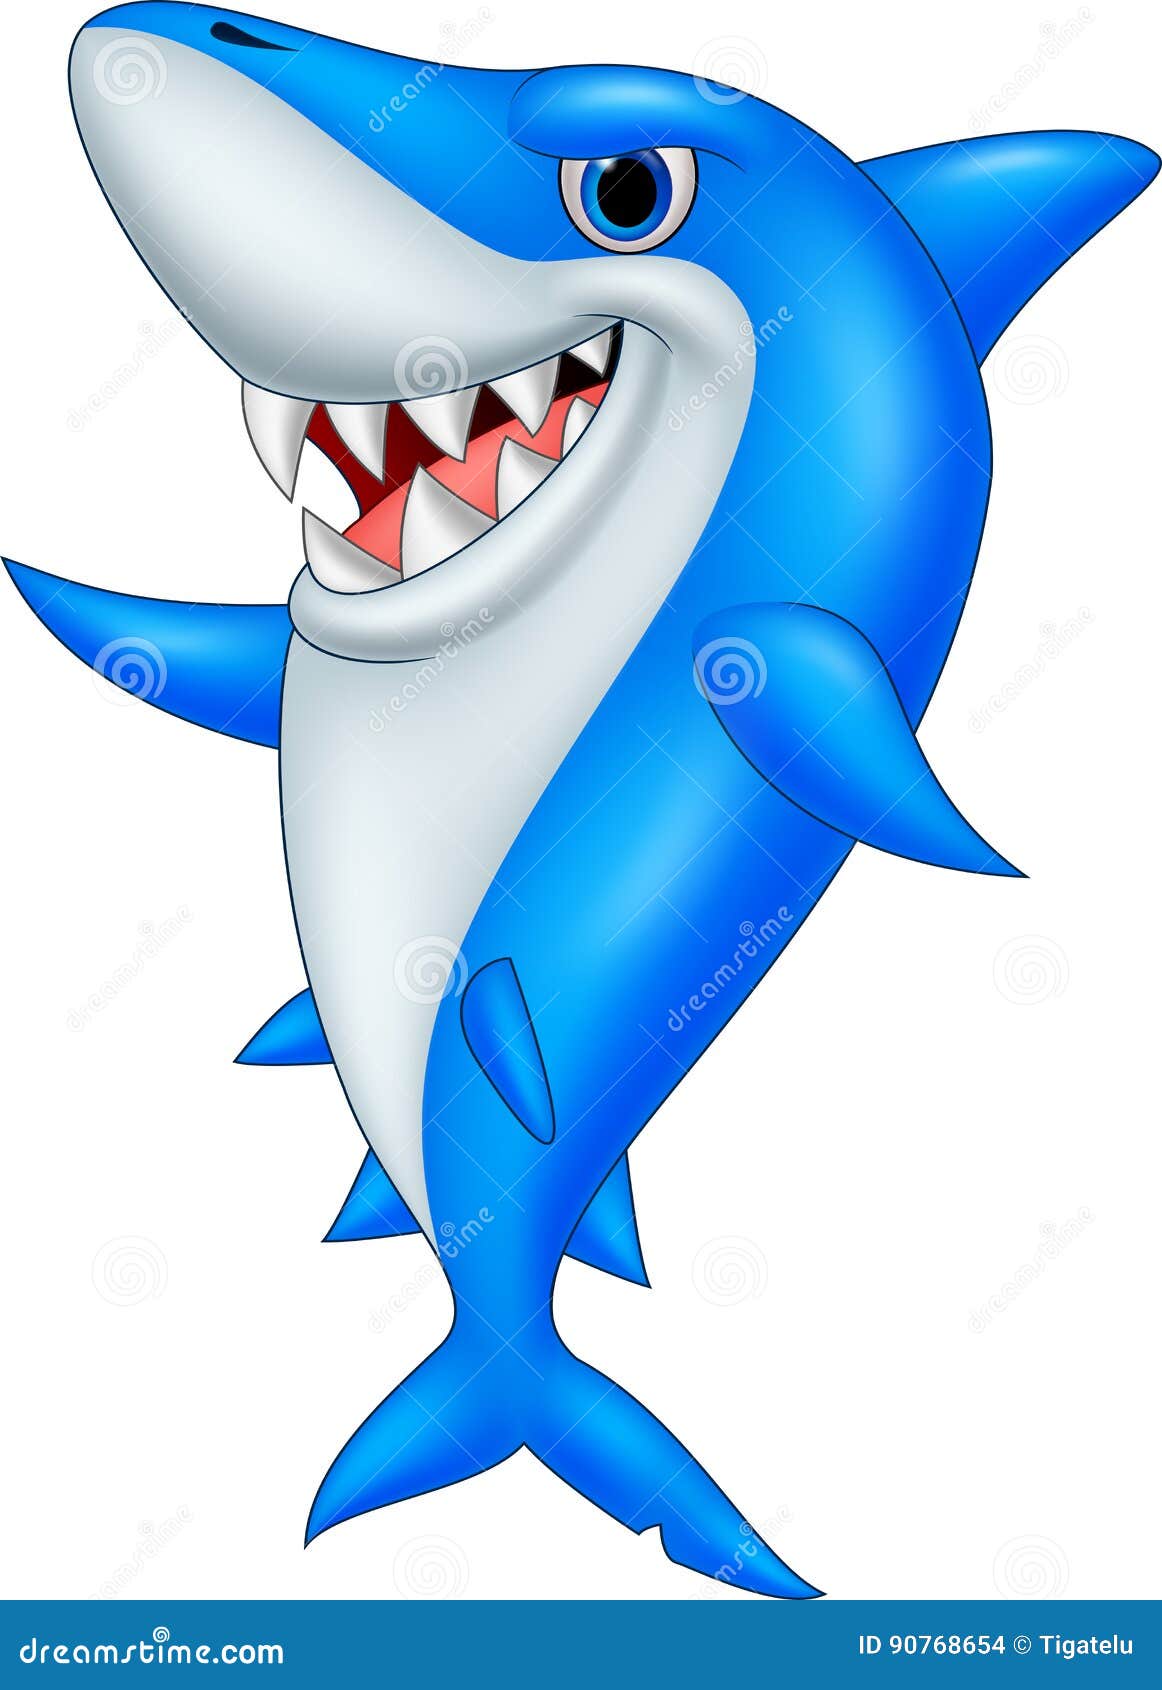 Cartoon funny shark stock vector. Illustration of animal - 90768654